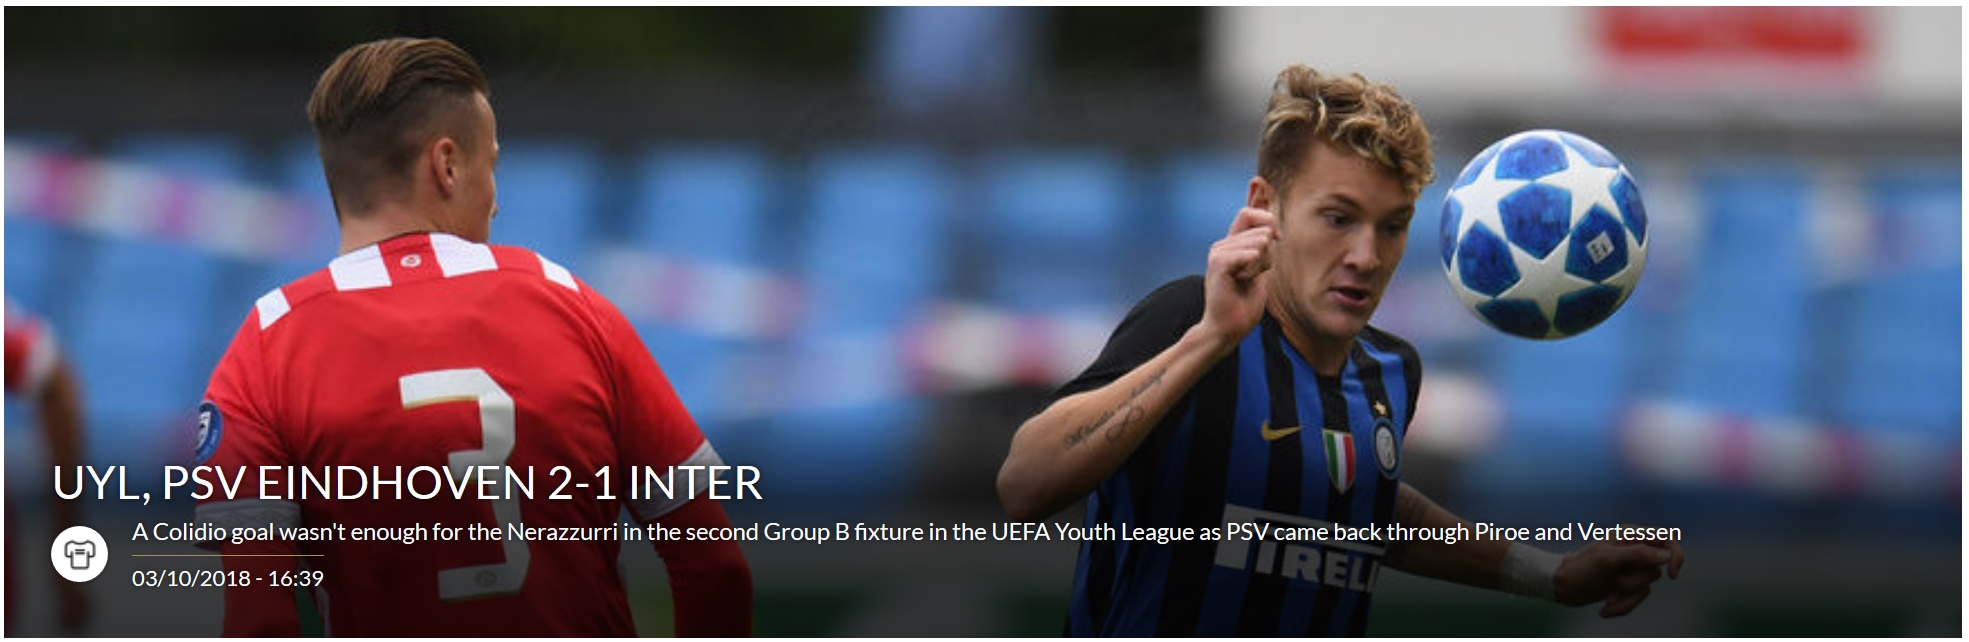 UEFA Youth League 2018/19 Temp292